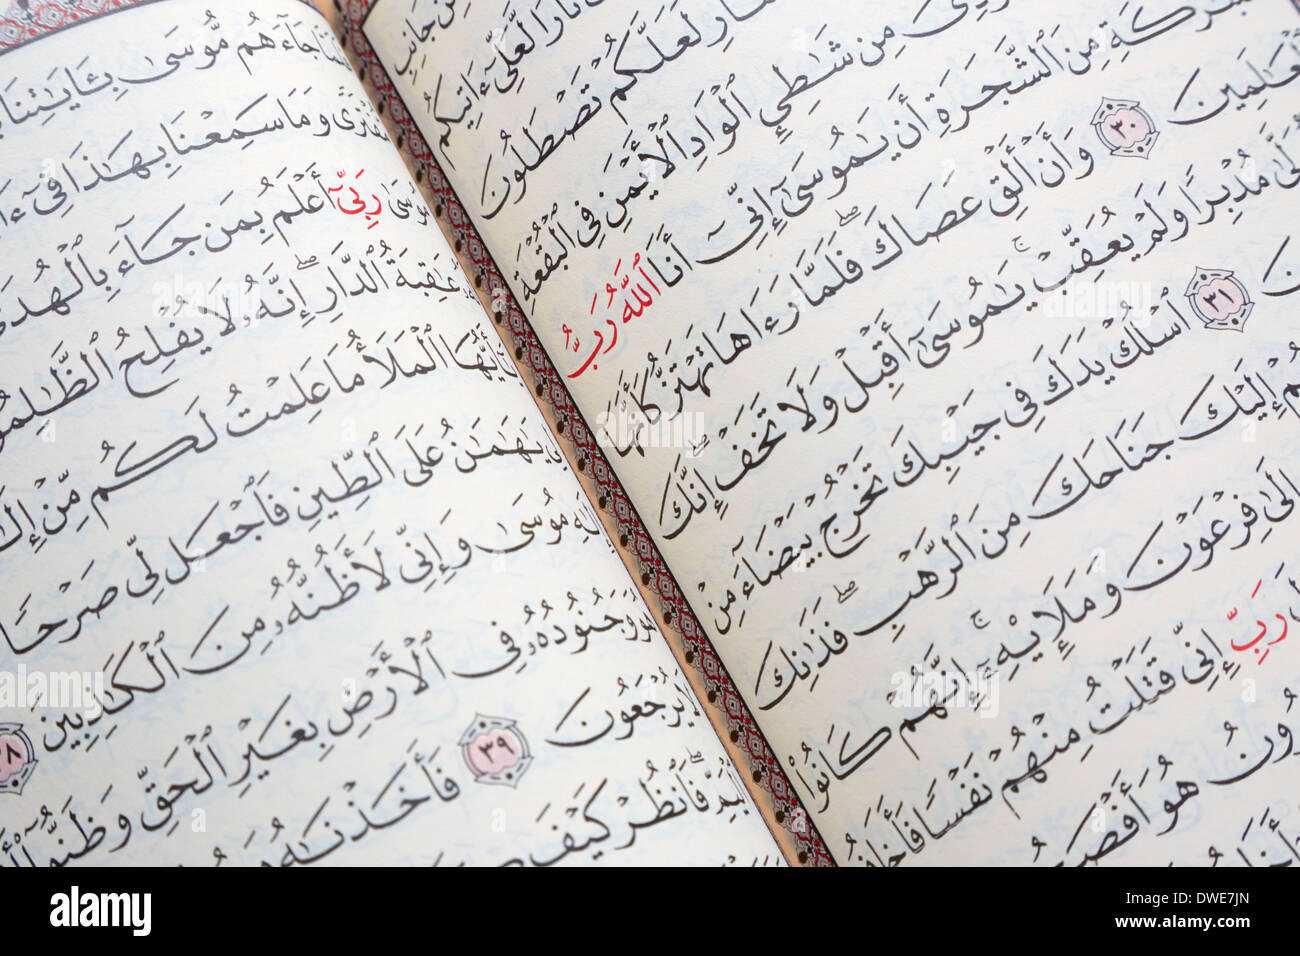 Coran, livre saint des musulmans d'arrière-plan des pages Banque D'Images